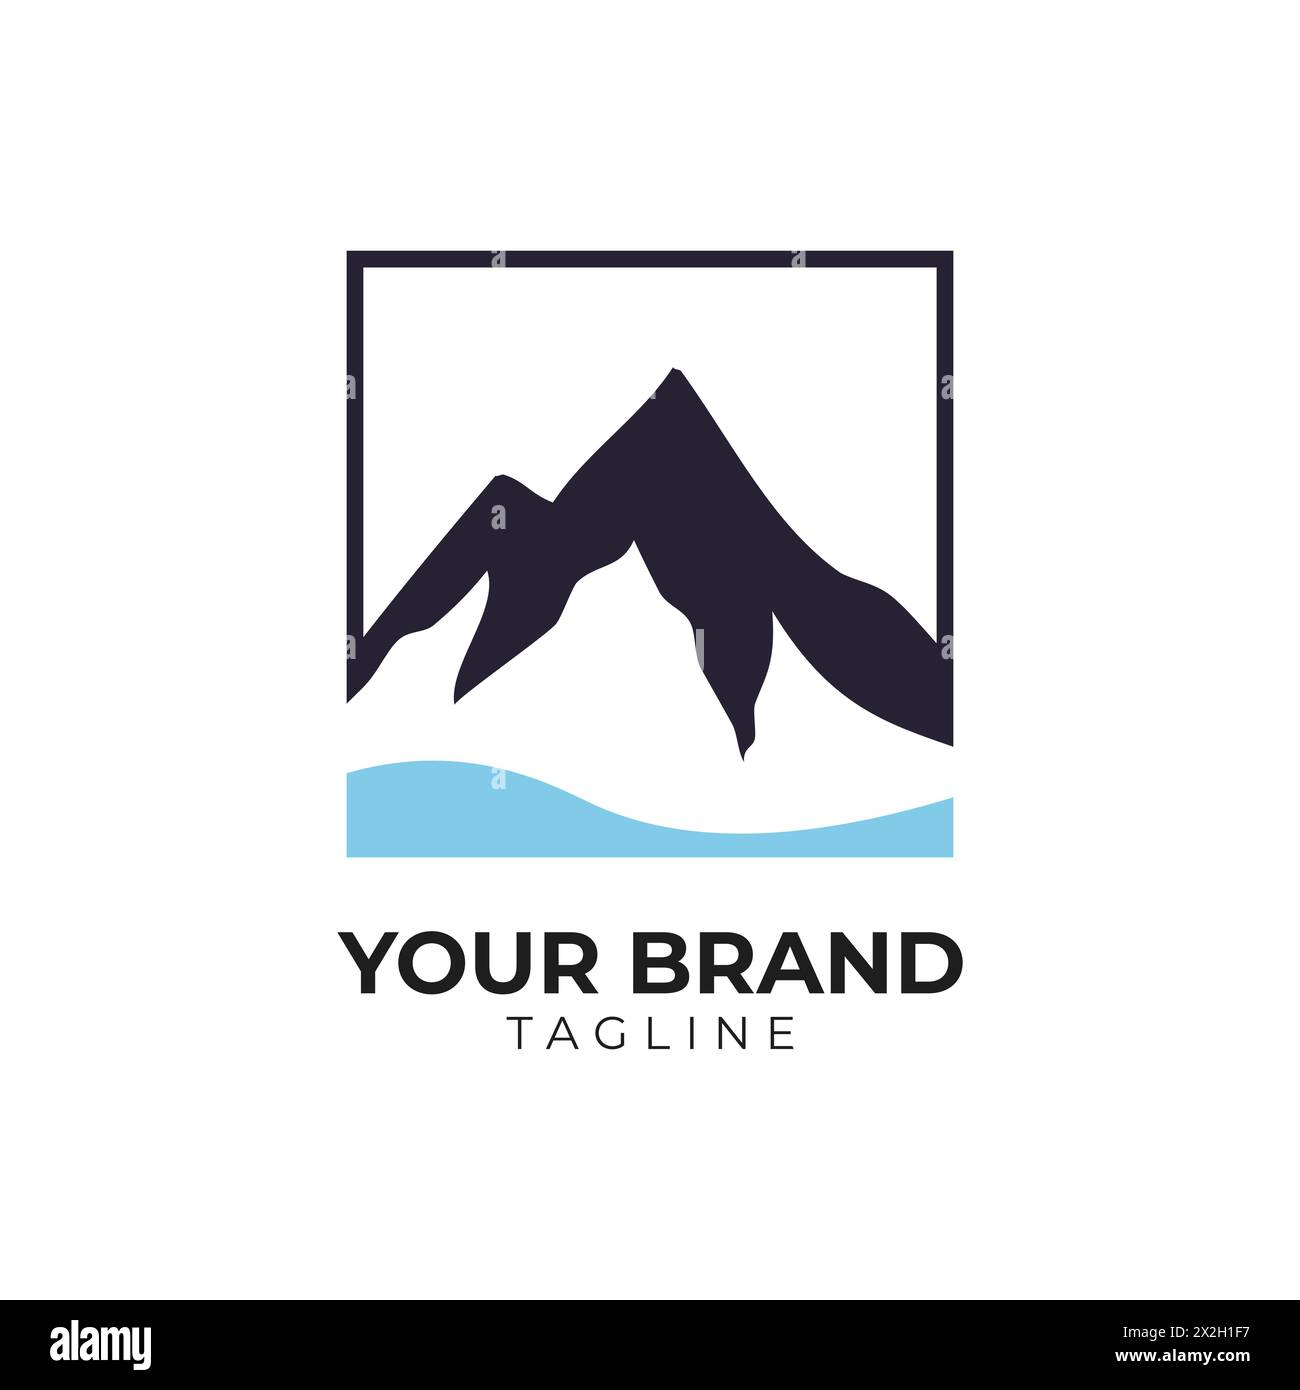 mountain peak and sea logo illustration Stock Vector